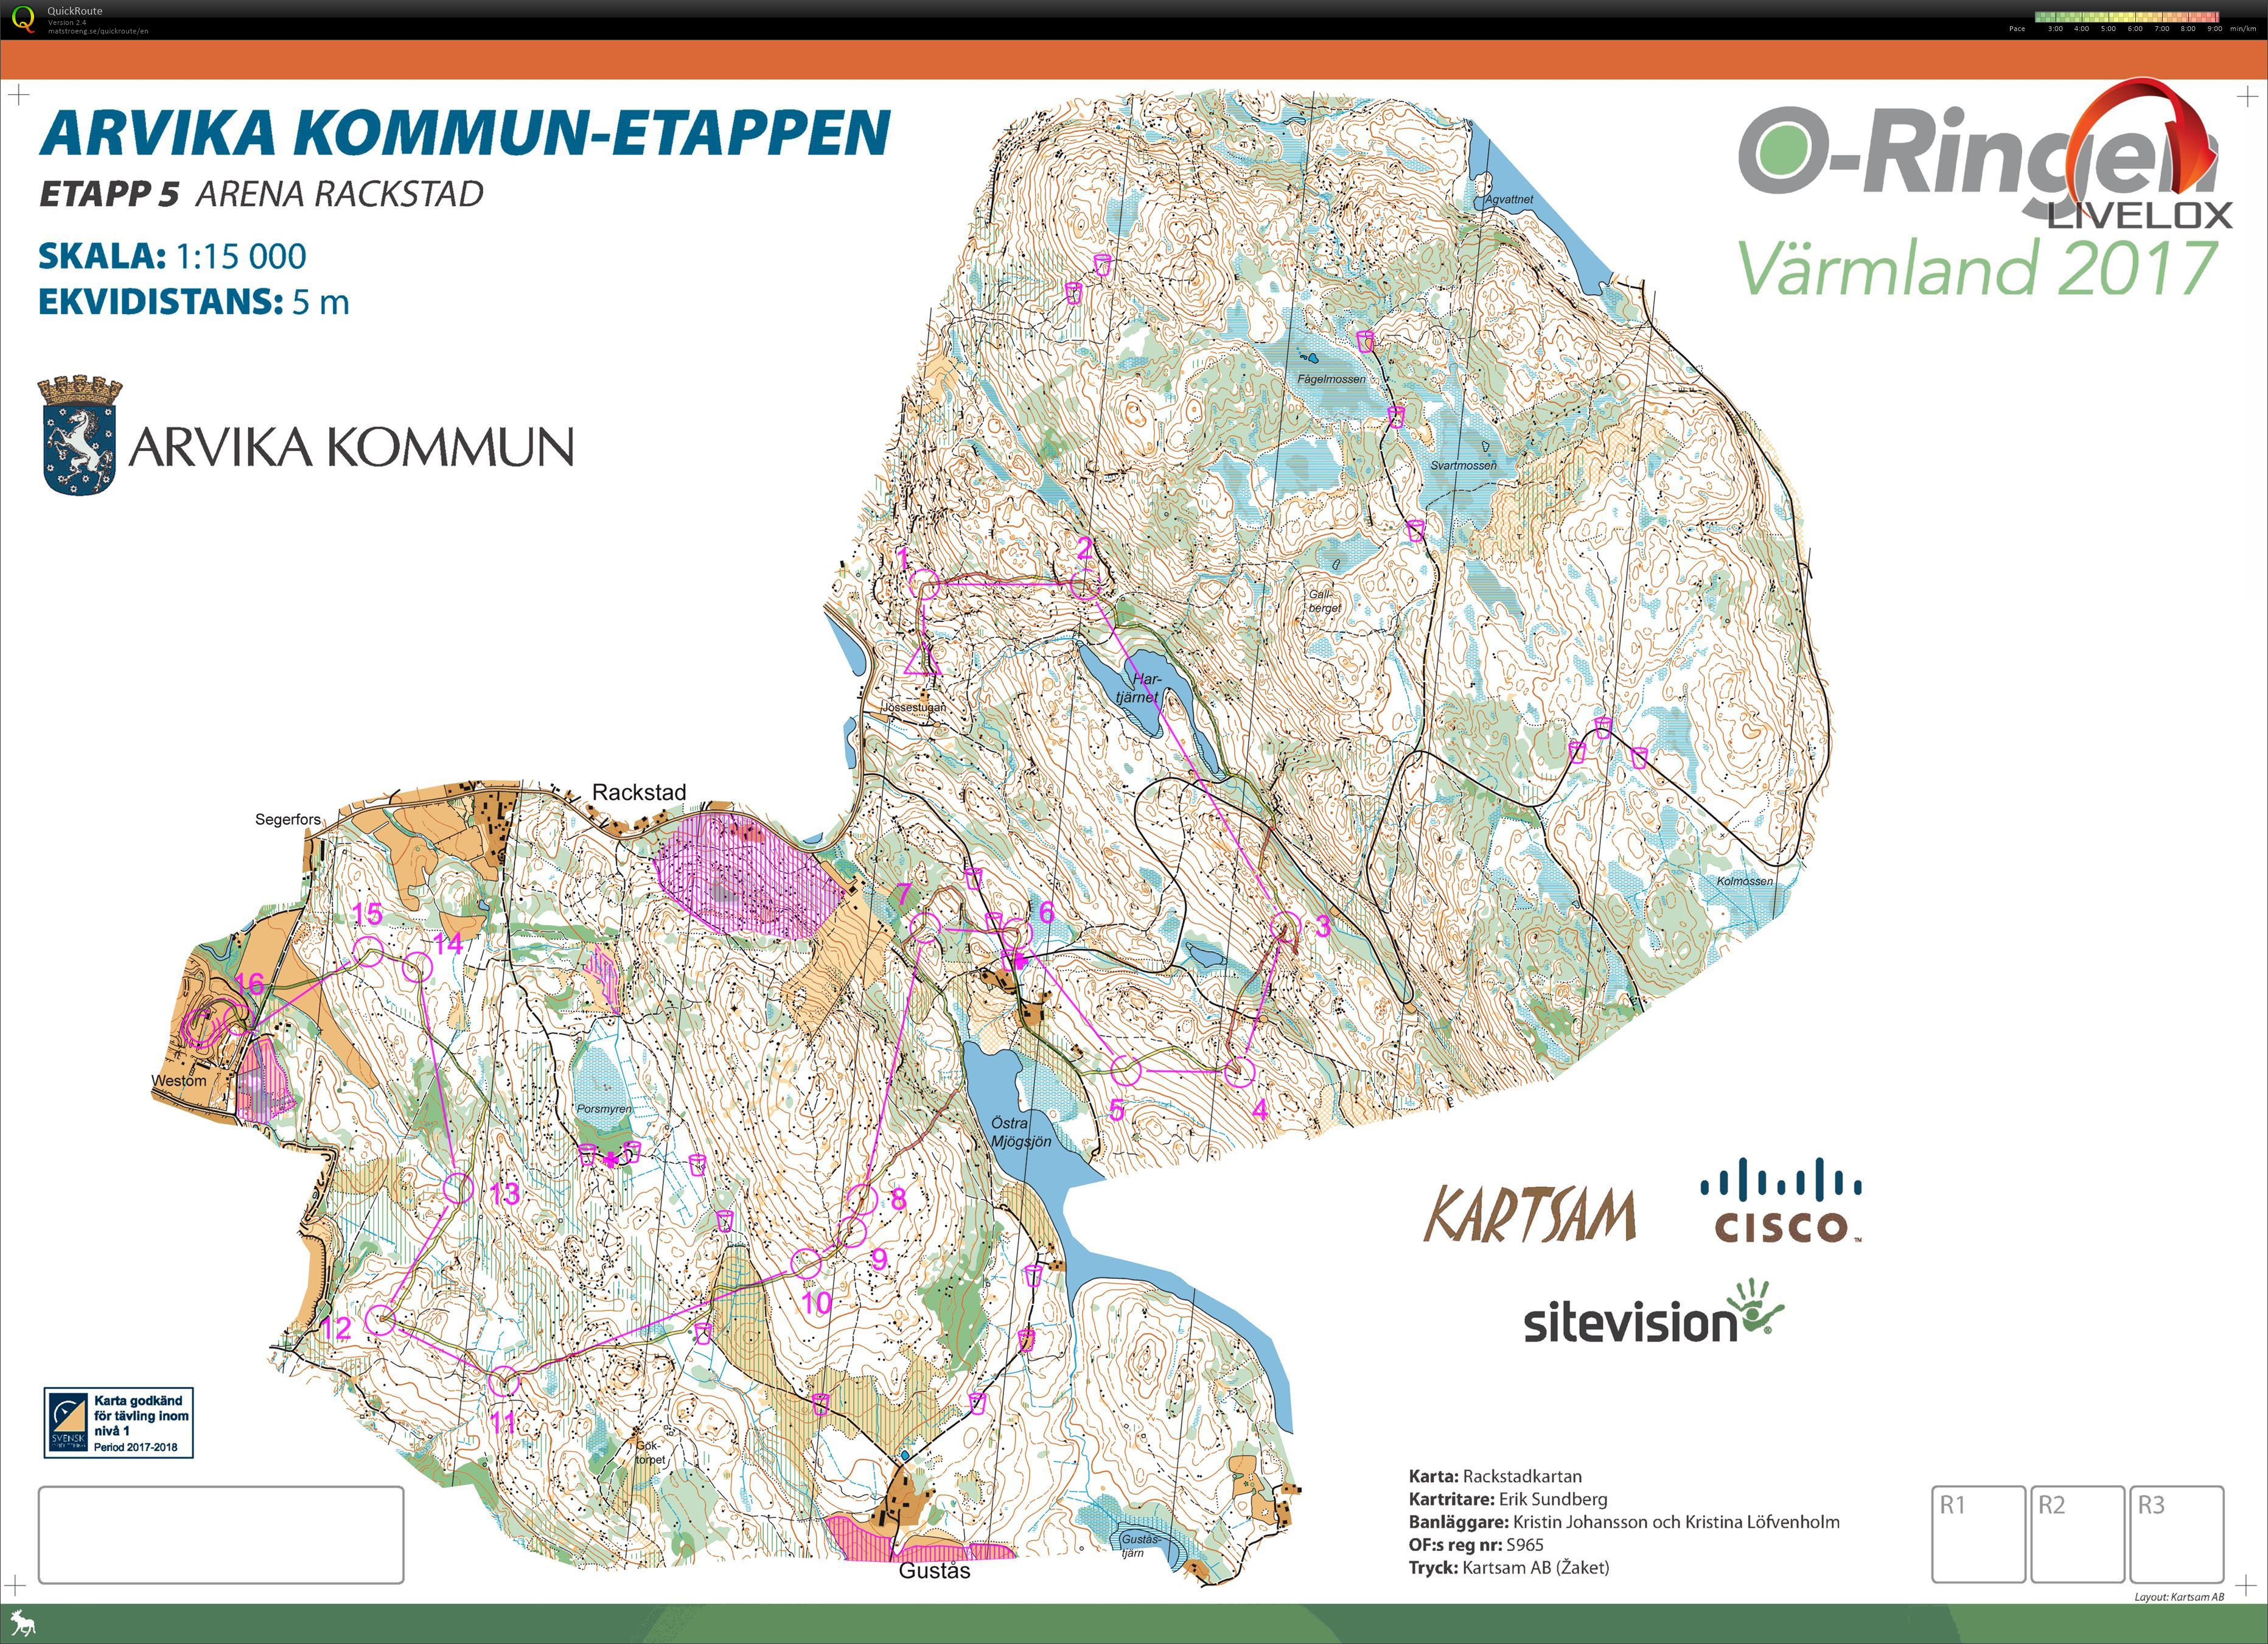 O-ringen etappe 5 Arvika Kommun-etappen (28-07-2017)